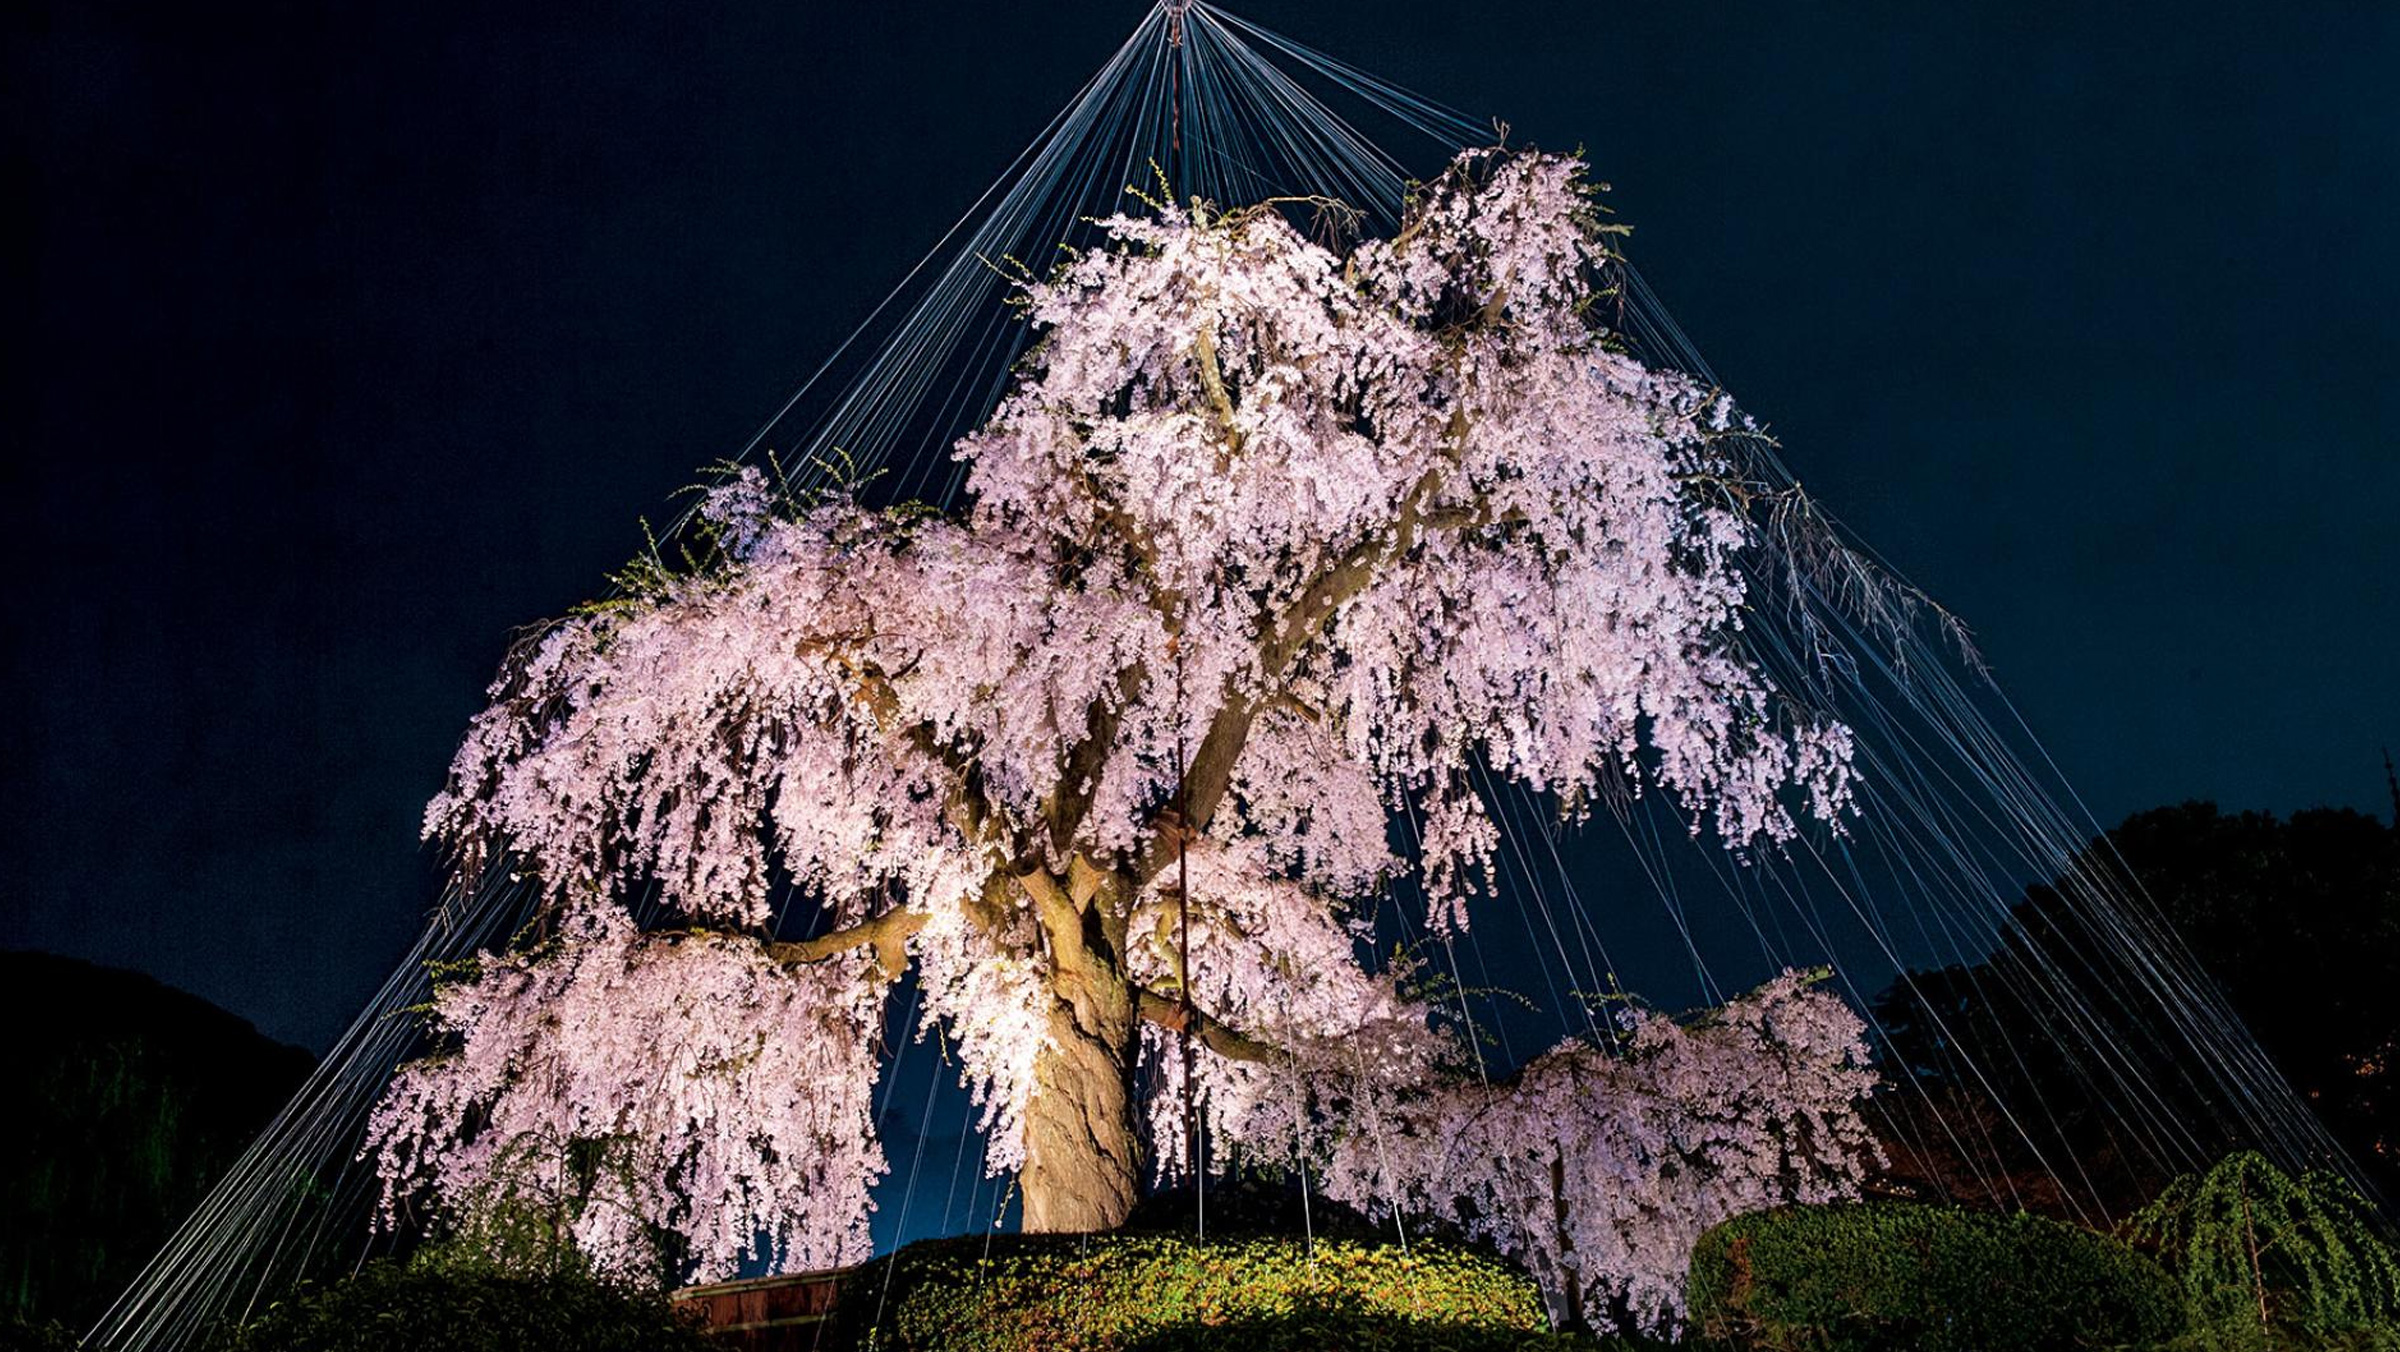 Tellerden oluşan bir perde Tokyo, Japonya’da bulunan bu kiraz ağacının fotoğrafına artistik bir etki katıyor. 